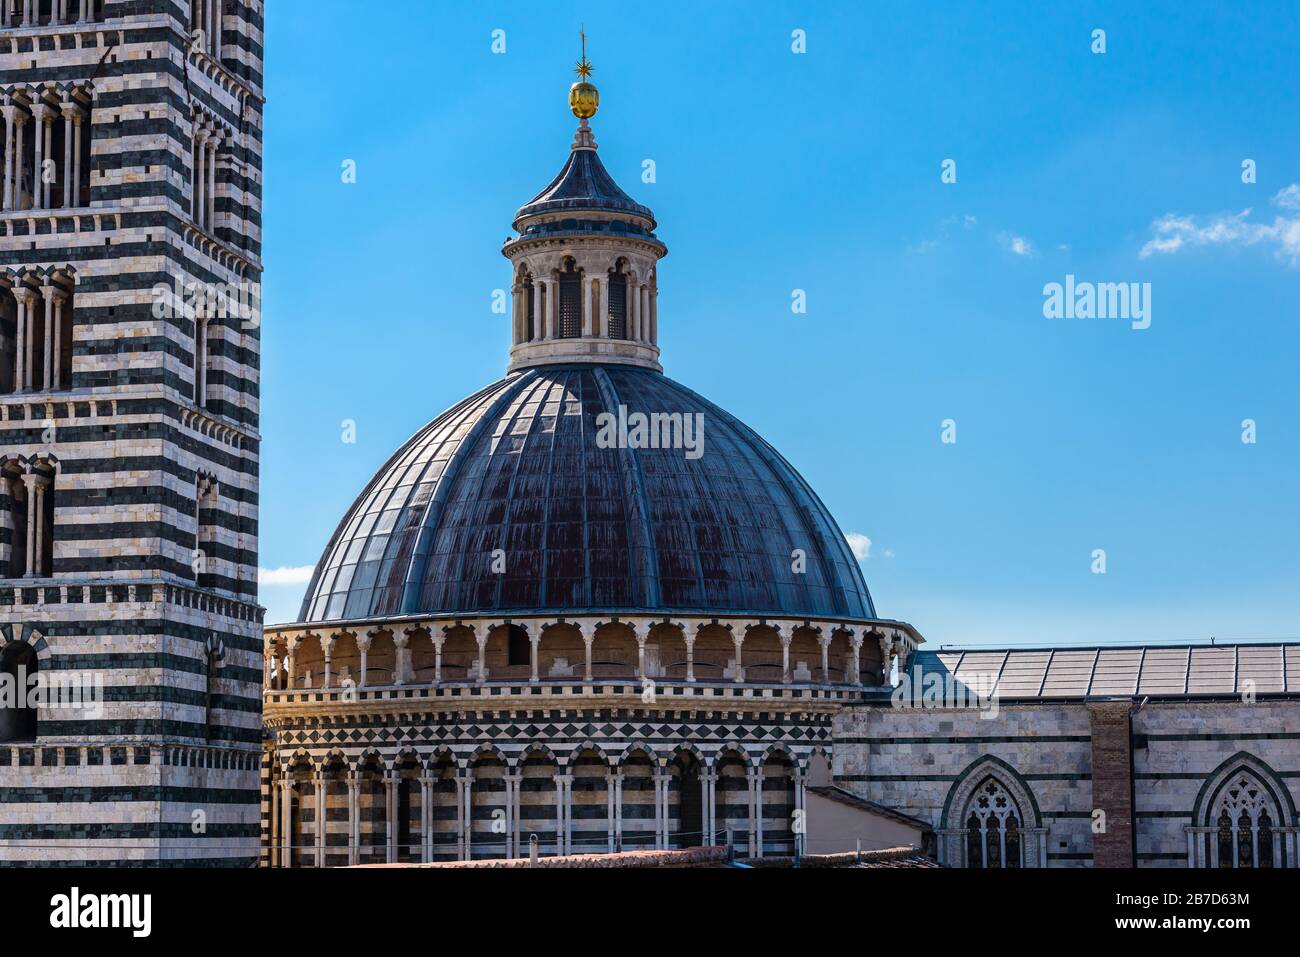 La cúpula de la Catedral de Siena de Santa Maria Assuntá (Duomo di Siena) y el campanario (campanile) visto desde la terraza mirador de Facciatone. Foto de stock